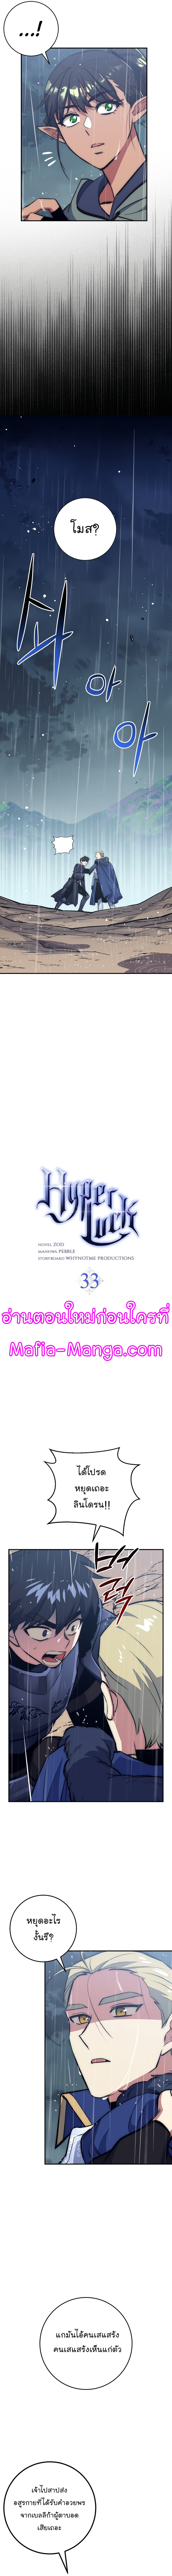 Hyper Luck33 (2)